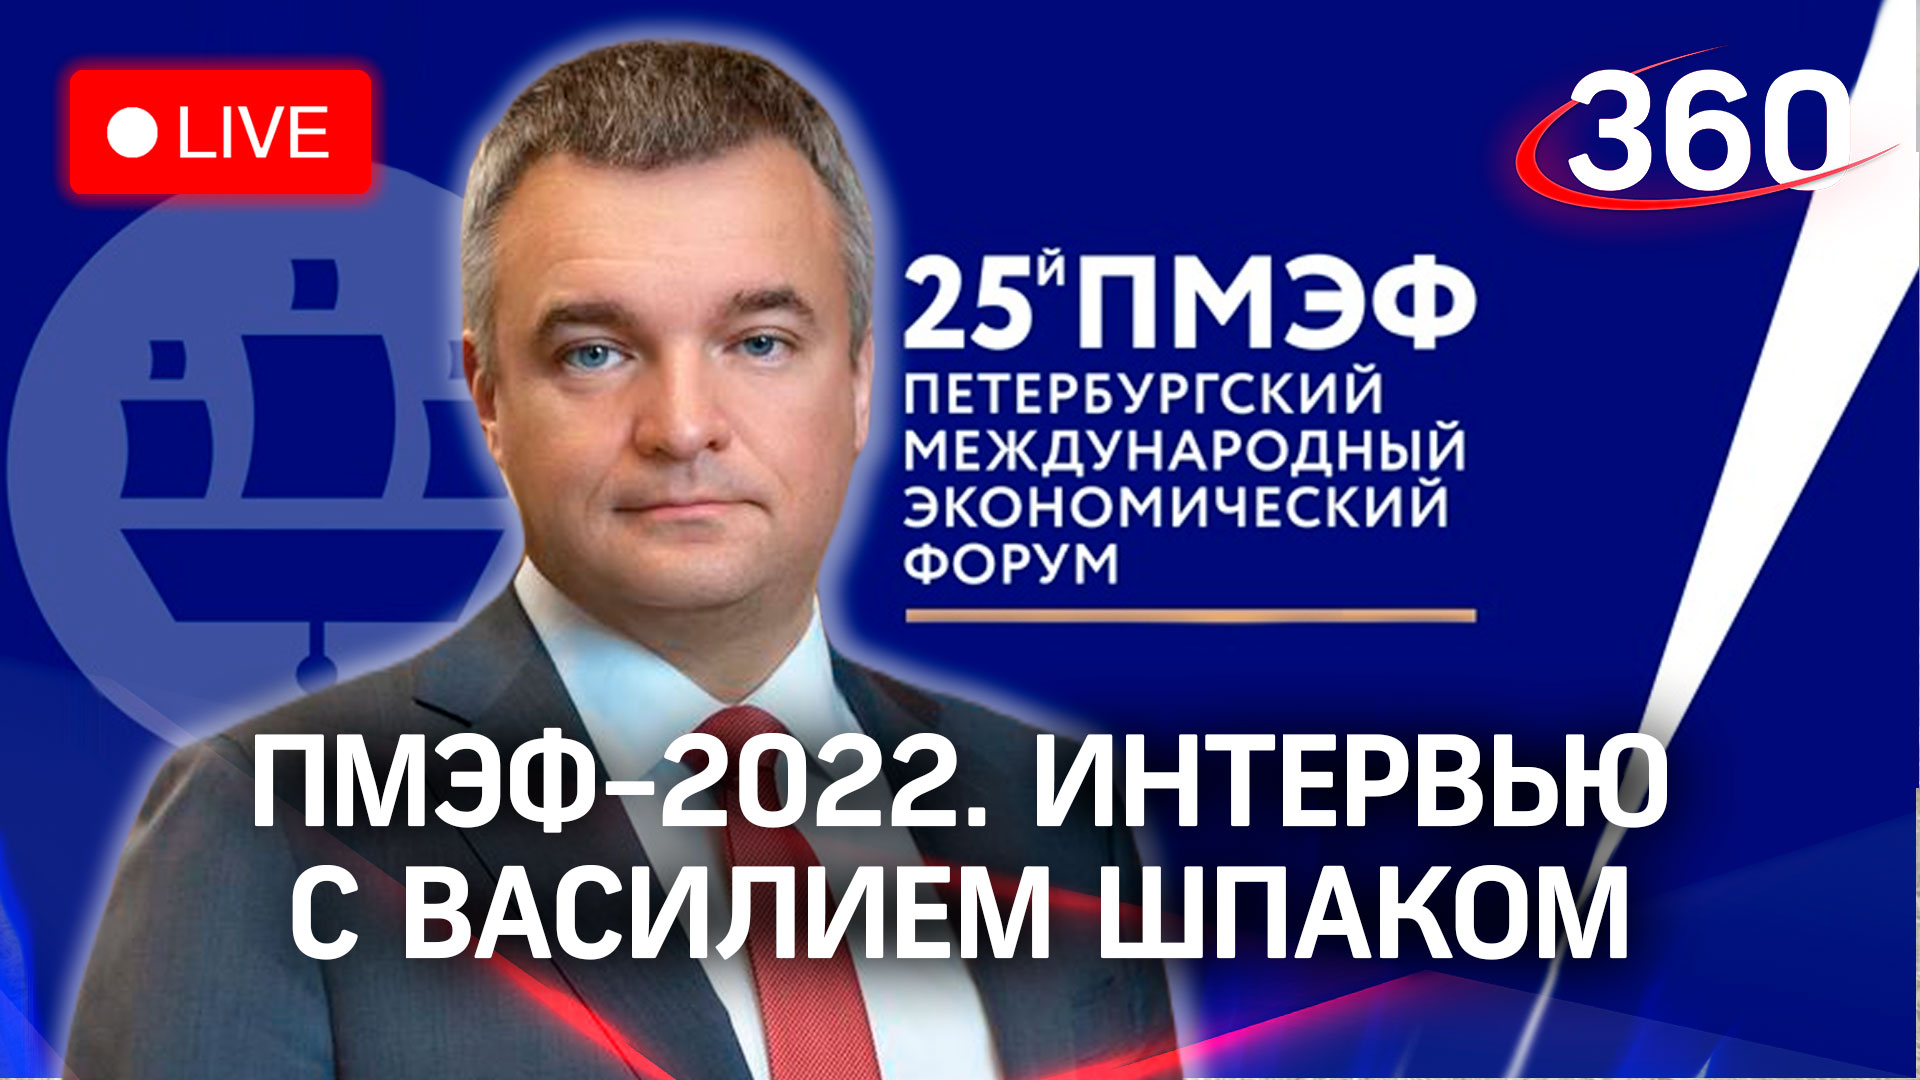 ПМЭФ-2022: интервью с Василием Шпаком, зам. министра промышленности и торговли РФ